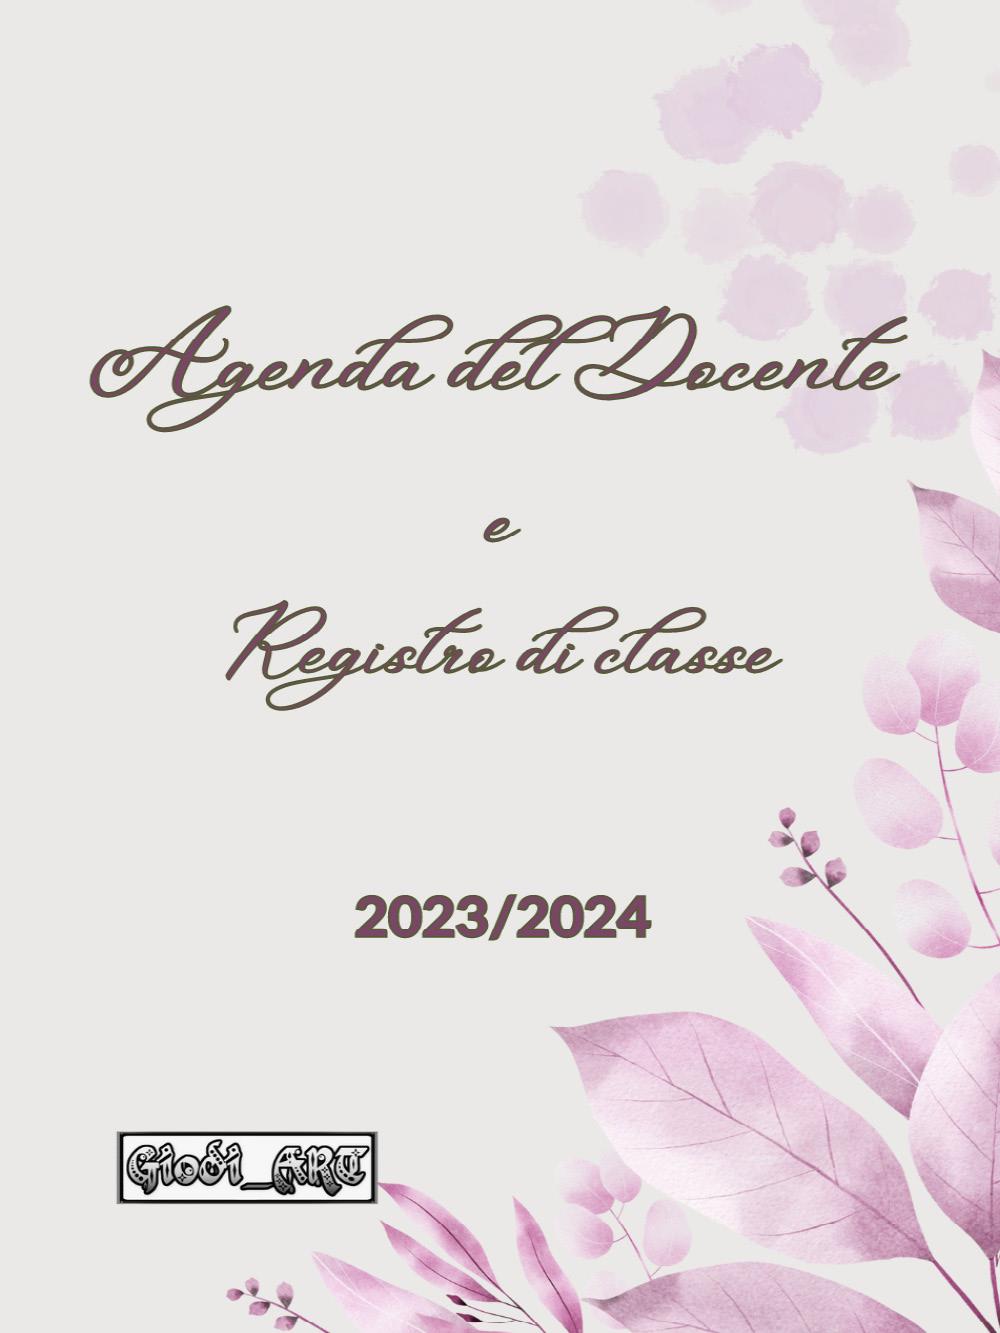 Agenda del Docente e Registro di Classe 2023/2024 di Giodi Art